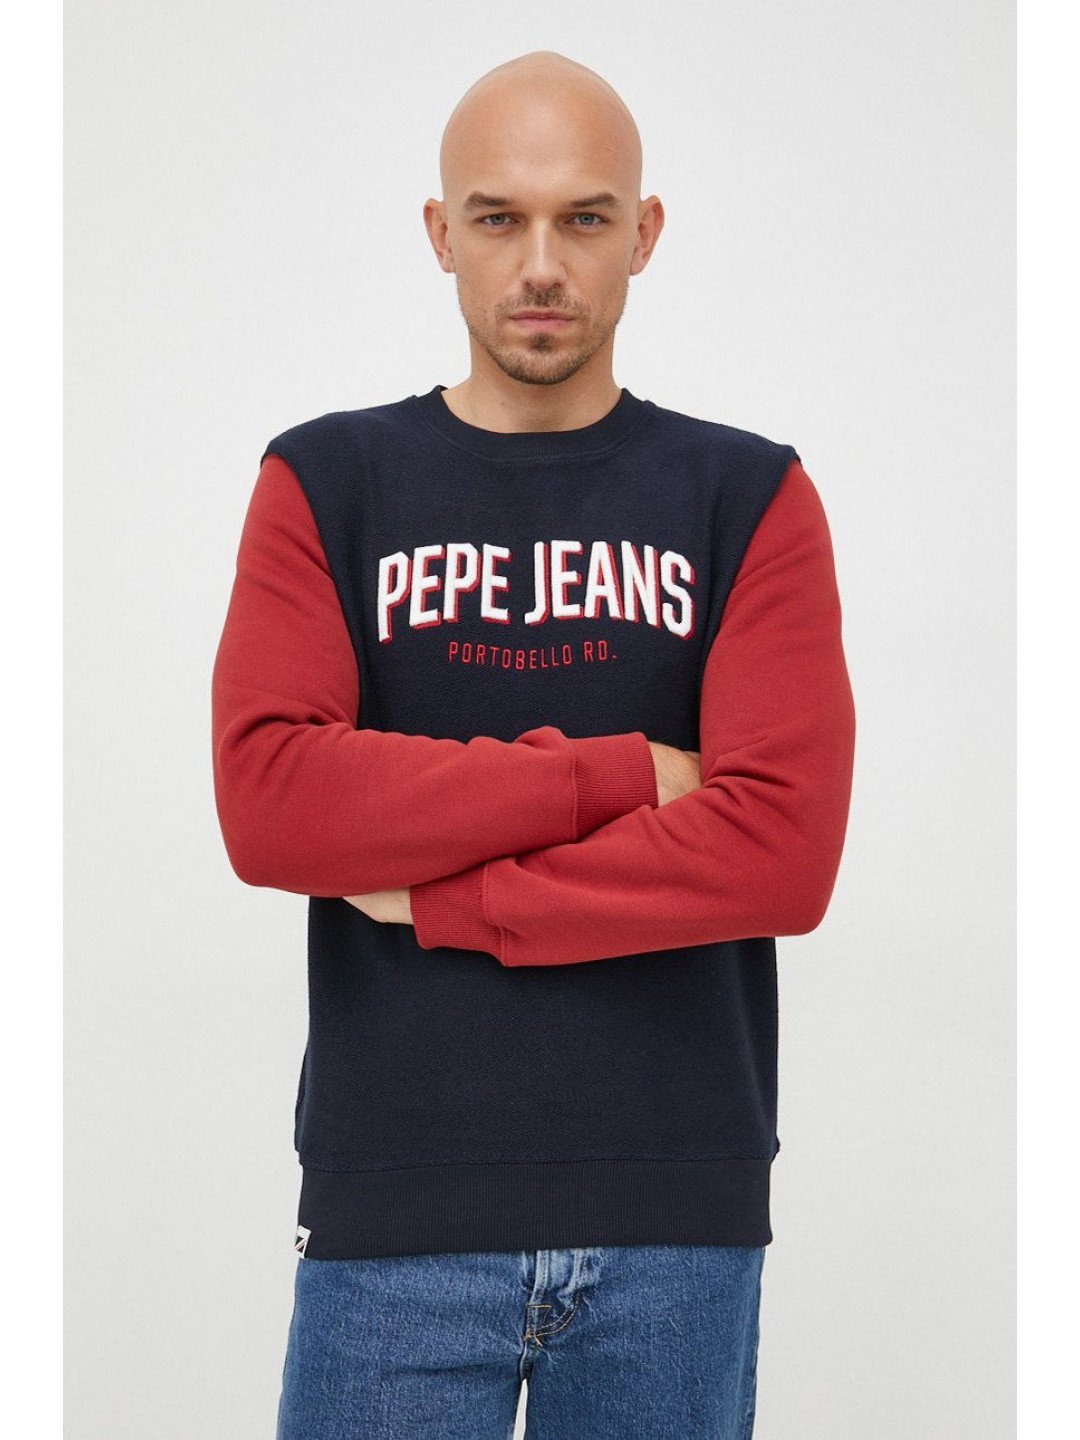 Bavlněná mikina Pepe Jeans pánská tmavomodrá barva s aplikací